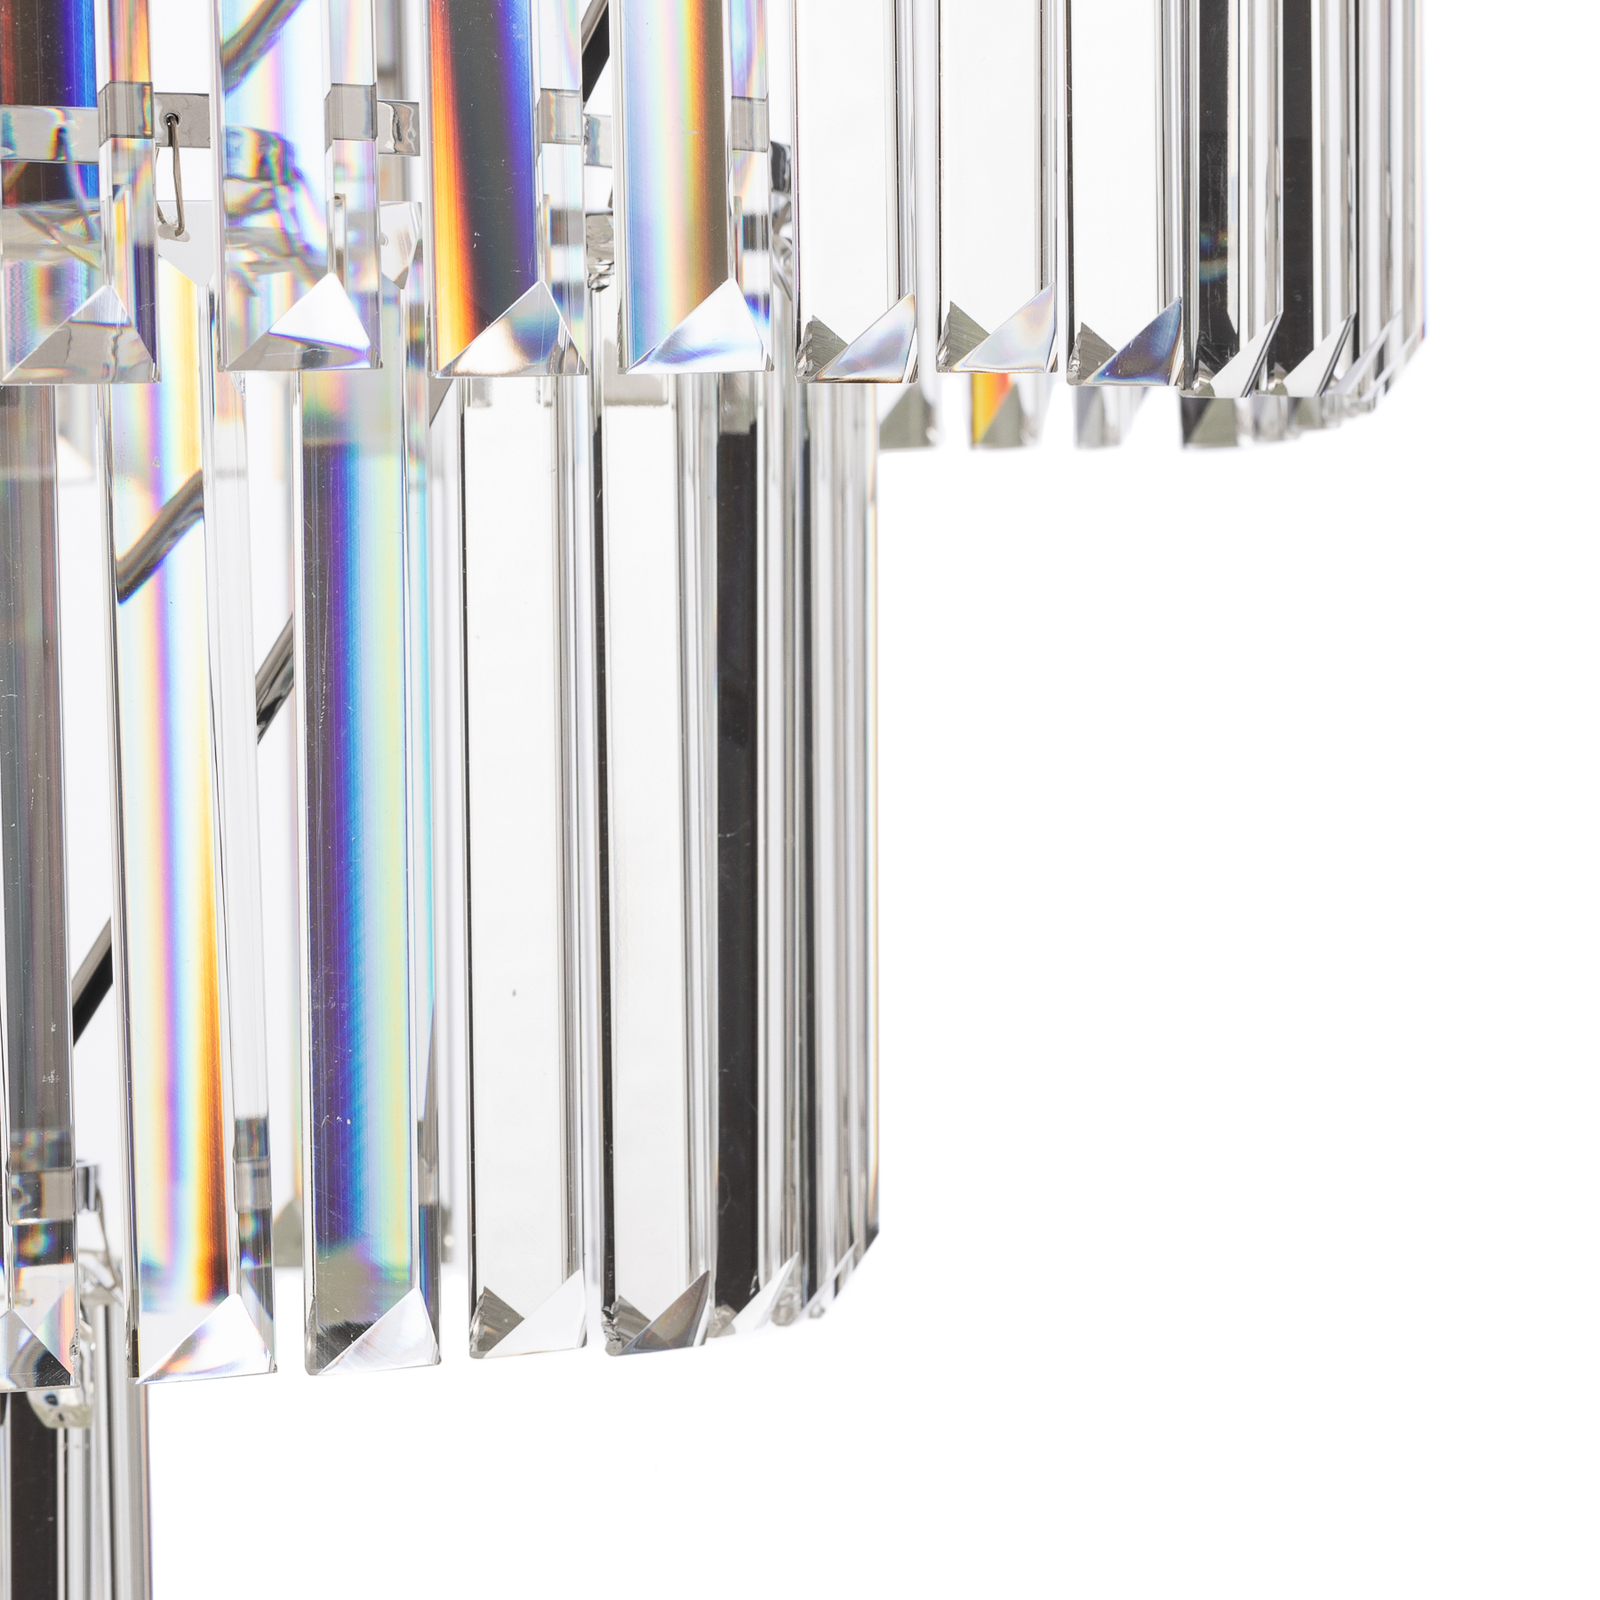 Cristal loftslampe, transparent/sølv, Ø 71cm